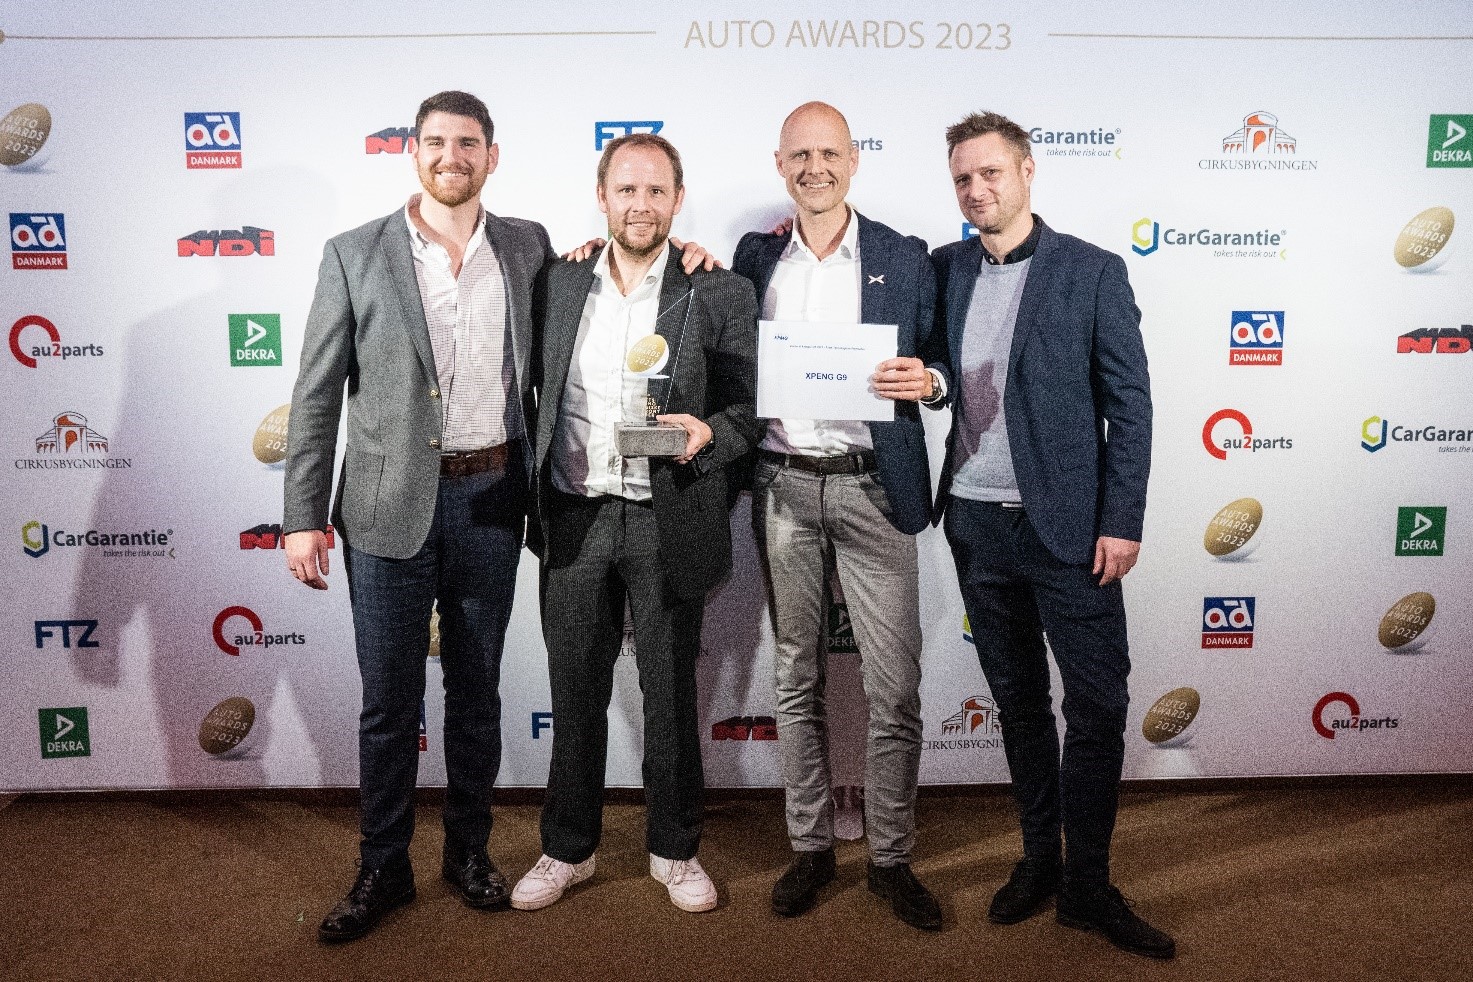 XPENG at Danish award show Auto Awards 2023